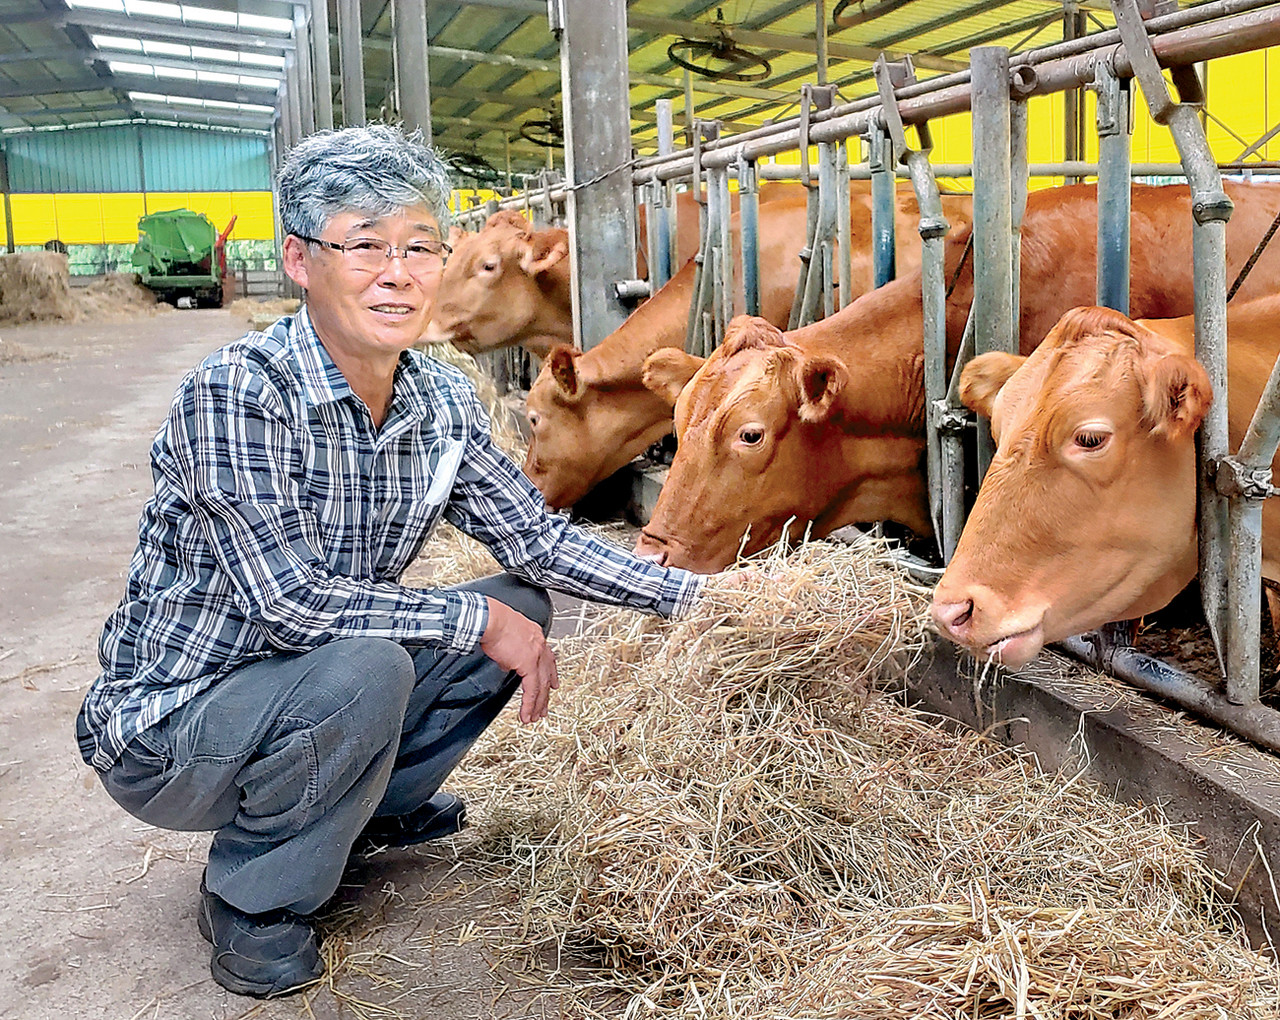 김두봉 민오름목장 대표는 농산물 시장개방 시대에 농가·소비자 상생만이 농업을 지속가능한 길이라고 강조했다.